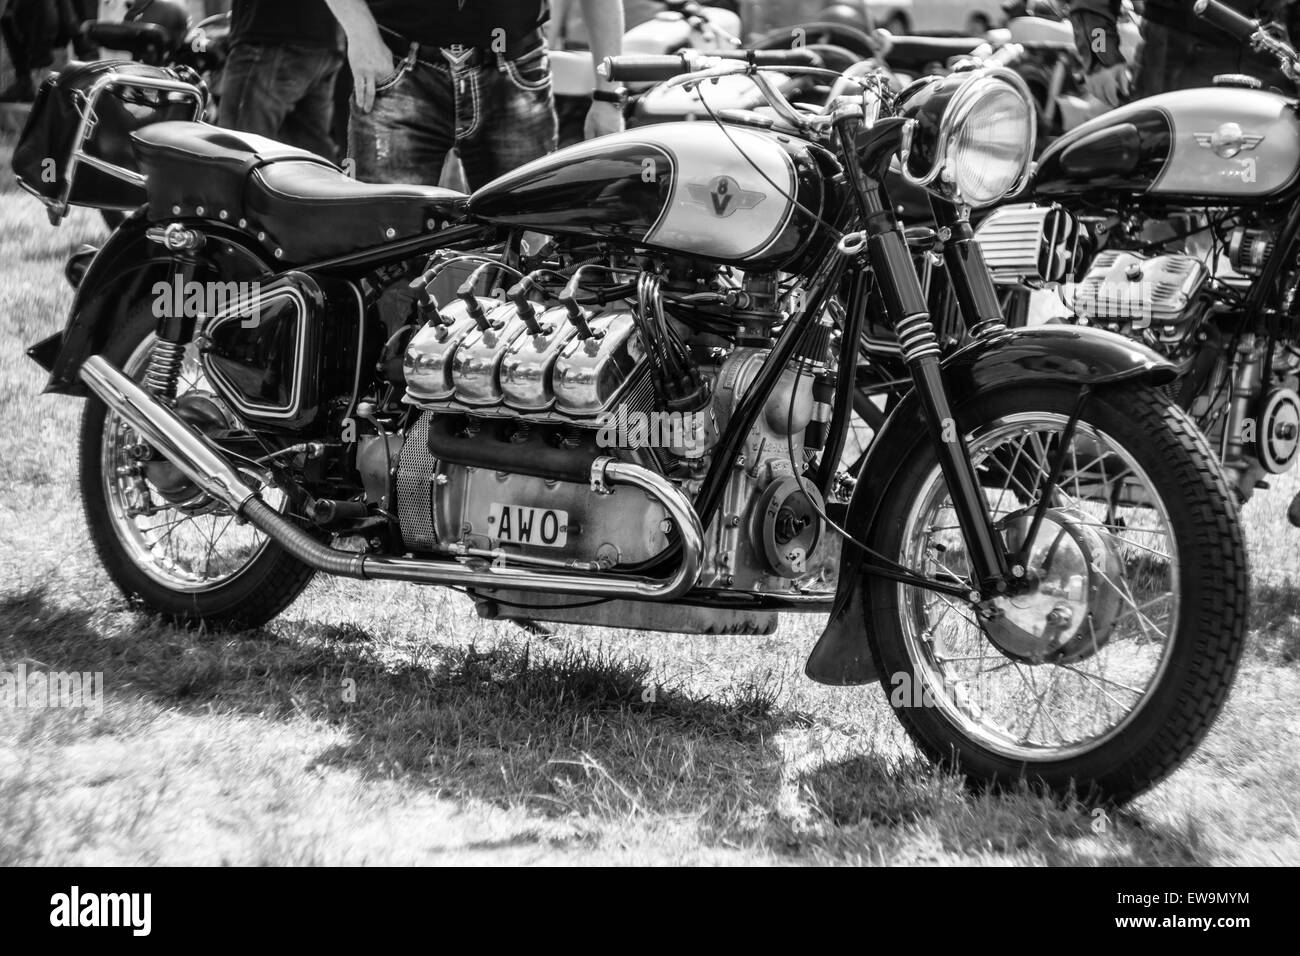 PAAREN IM GLIEN, ALLEMAGNE - le 23 mai 2015 : Une moto avec 8 cylindres (moteur V8). Noir et blanc. L'oldtimer show à MAFZ. Banque D'Images